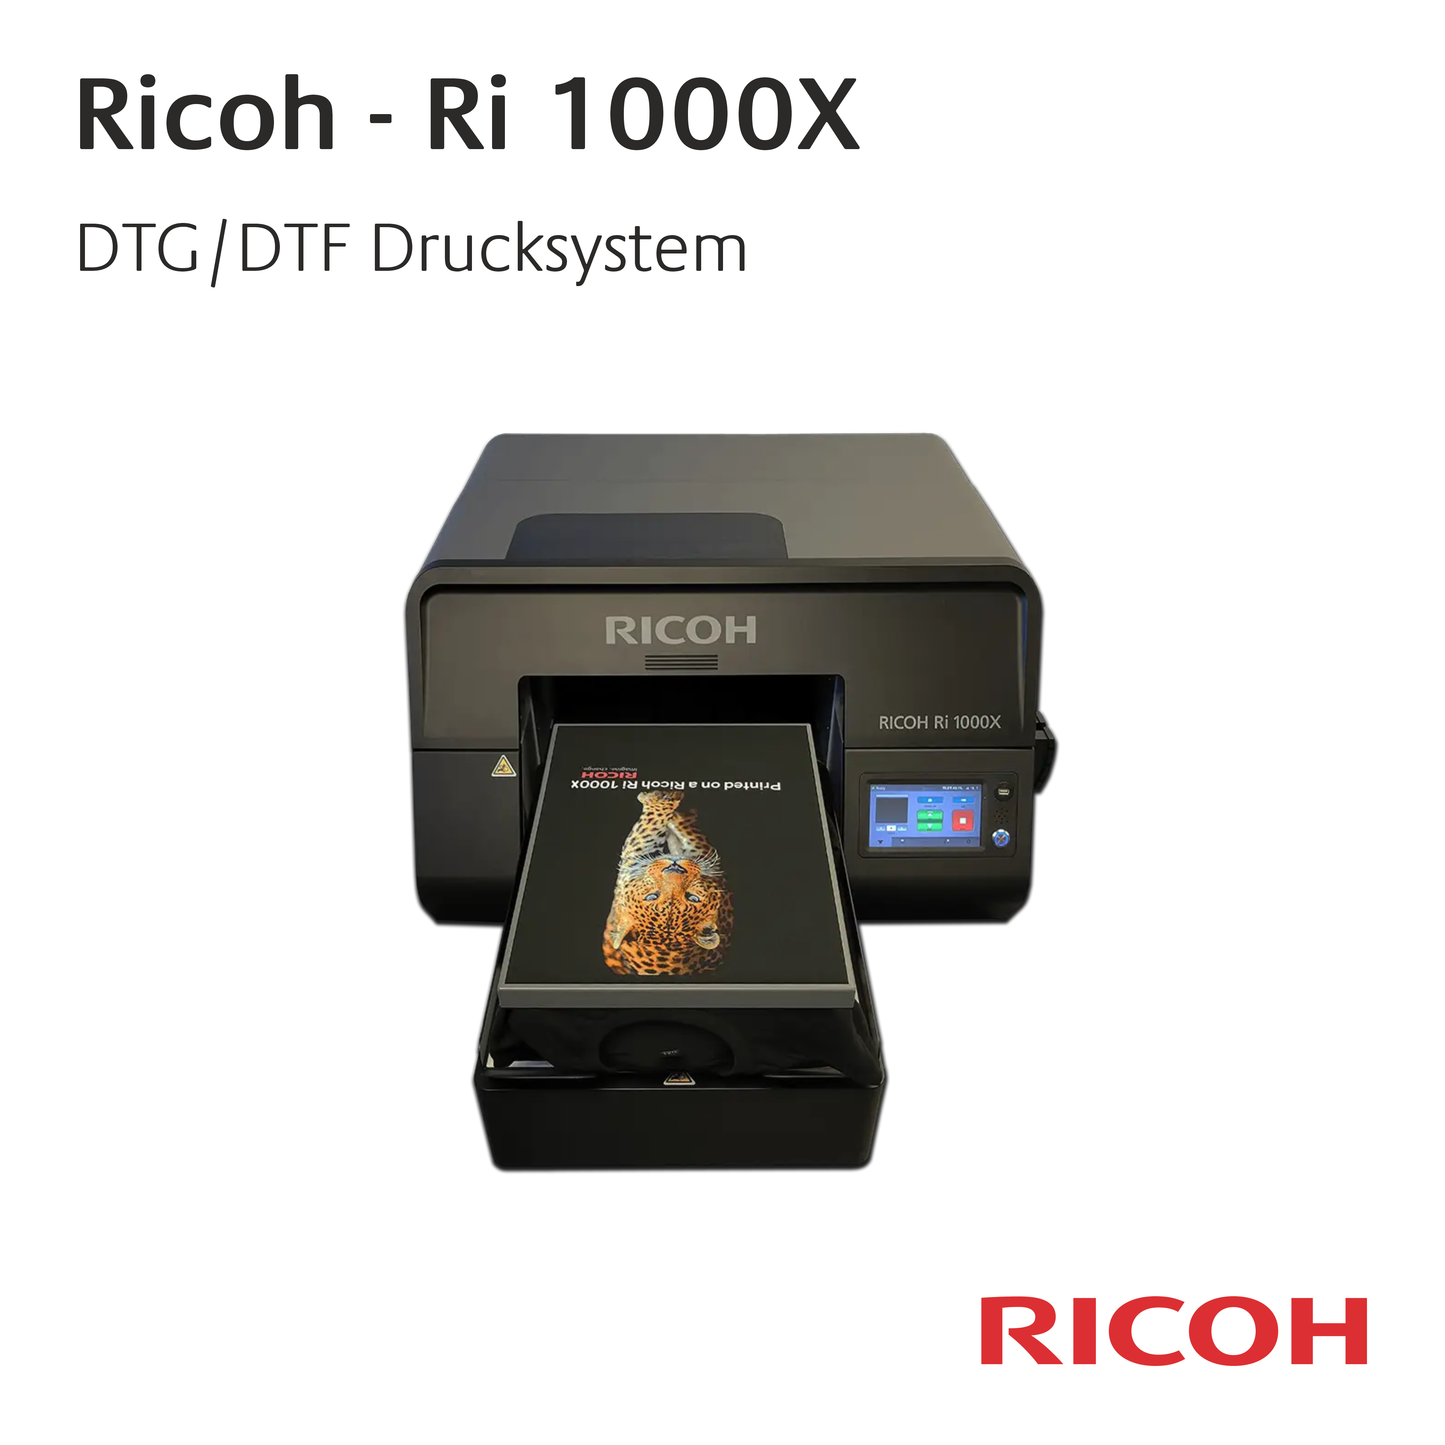 Ricoh Ri 1000X - Einpaletten-Drucksystem für DTG und DTF